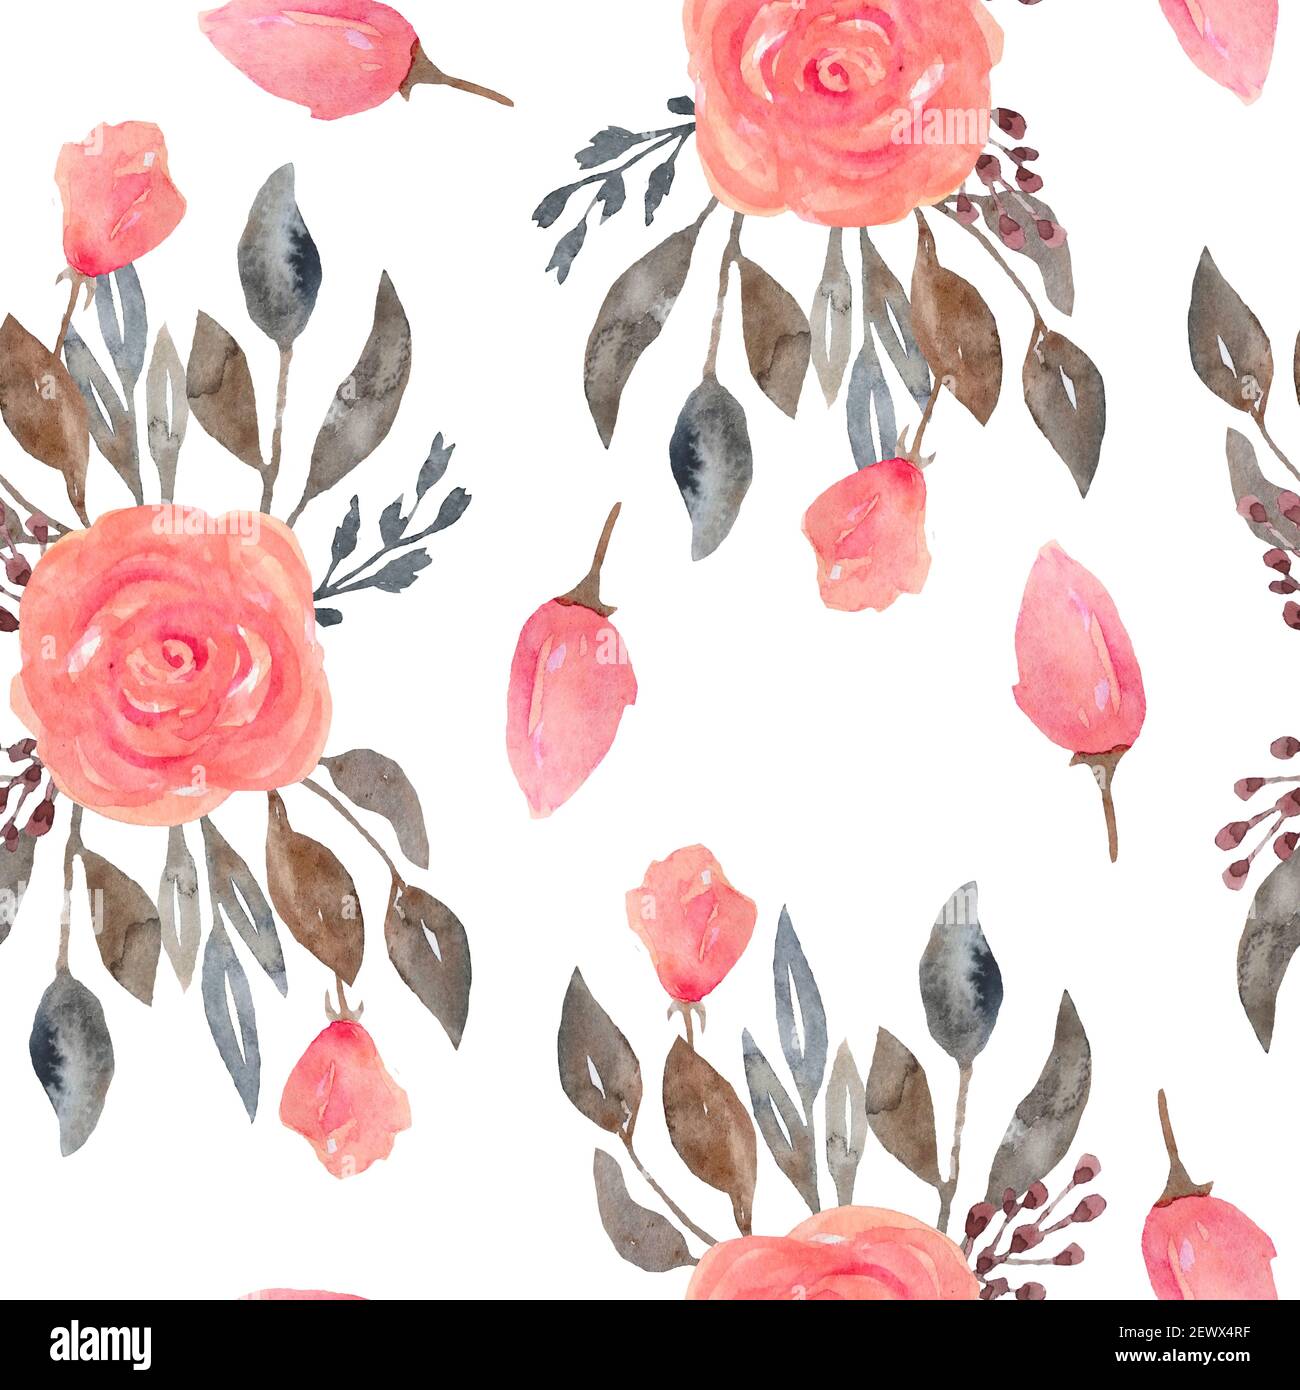 Aquarell nahtloses Muster aus rosa erröten Rosen Blumen und grau braun neutral verblasste Blätter. Blumensträuße, Blütenblätter blühen. Elegante Gartenblüten für textile Hochzeit Einladungskarten Tapete. Stockfoto